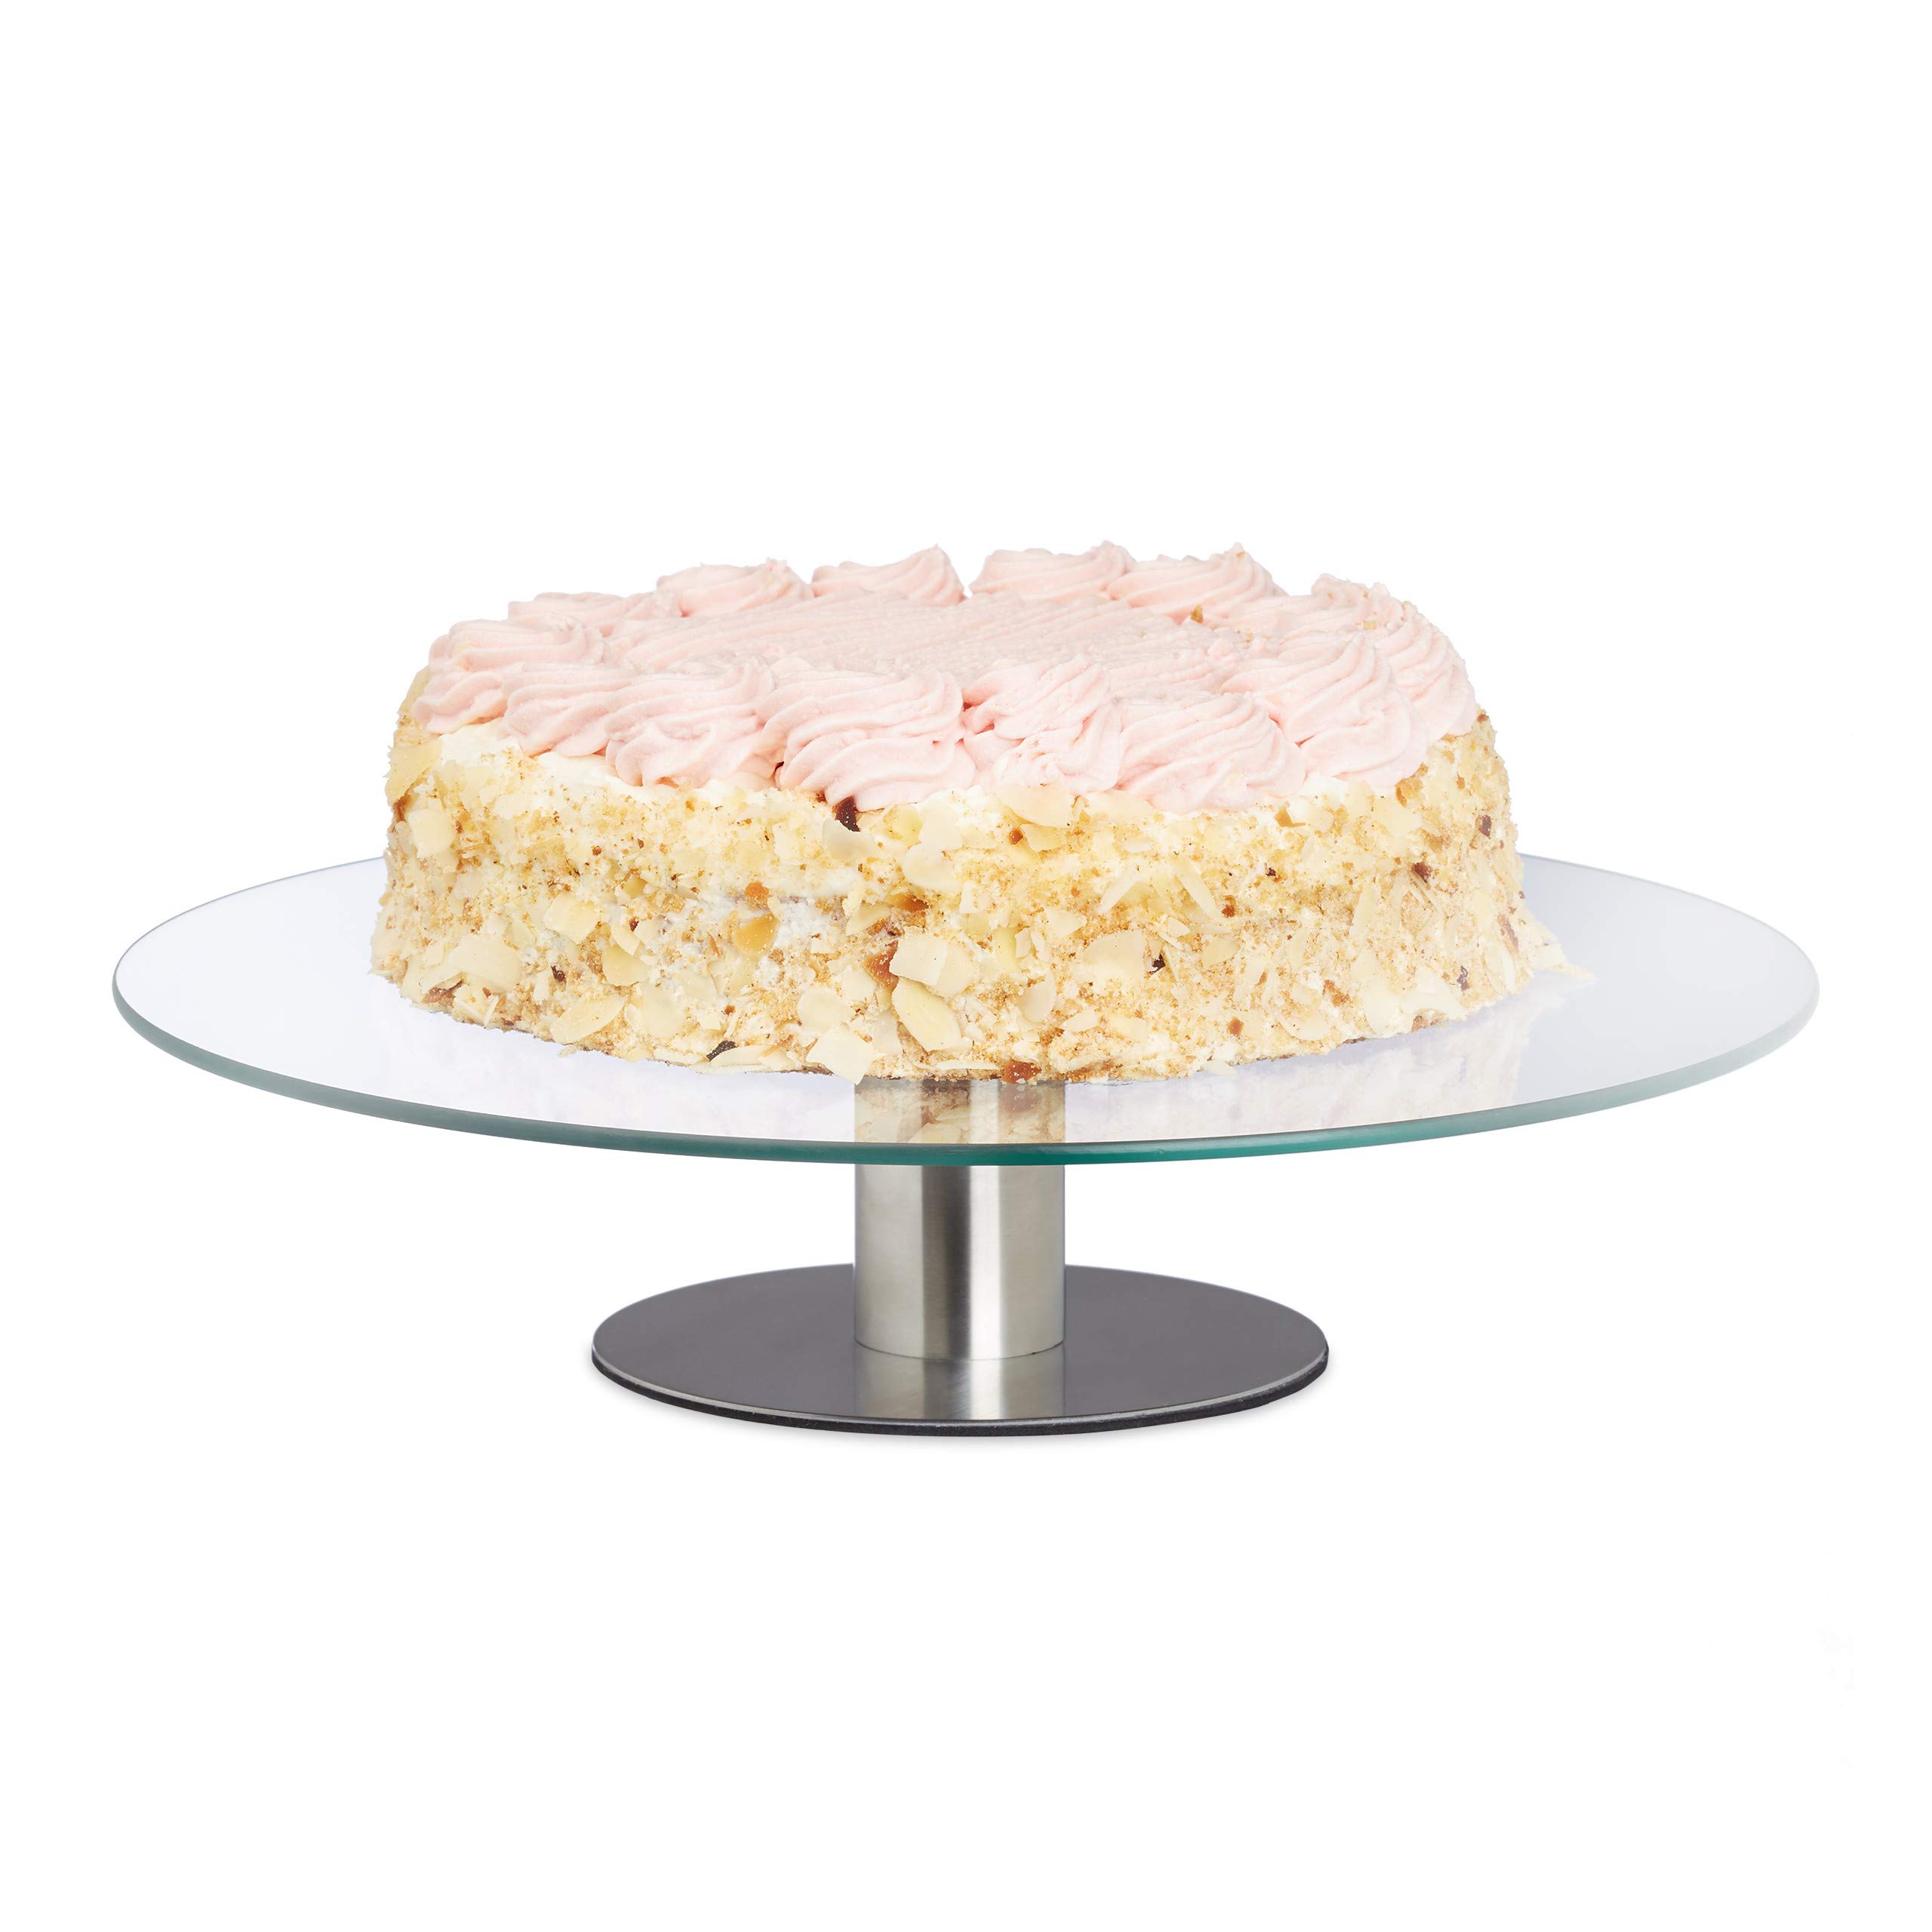 acheter Relaxdays Assiette à gâteau rotative, base, assiette à gâteau pour décoration, plaque tournante à gâteau, diamètre 30 cm, transparente, 1 pièce wnF0hxytb juste de l´acheter